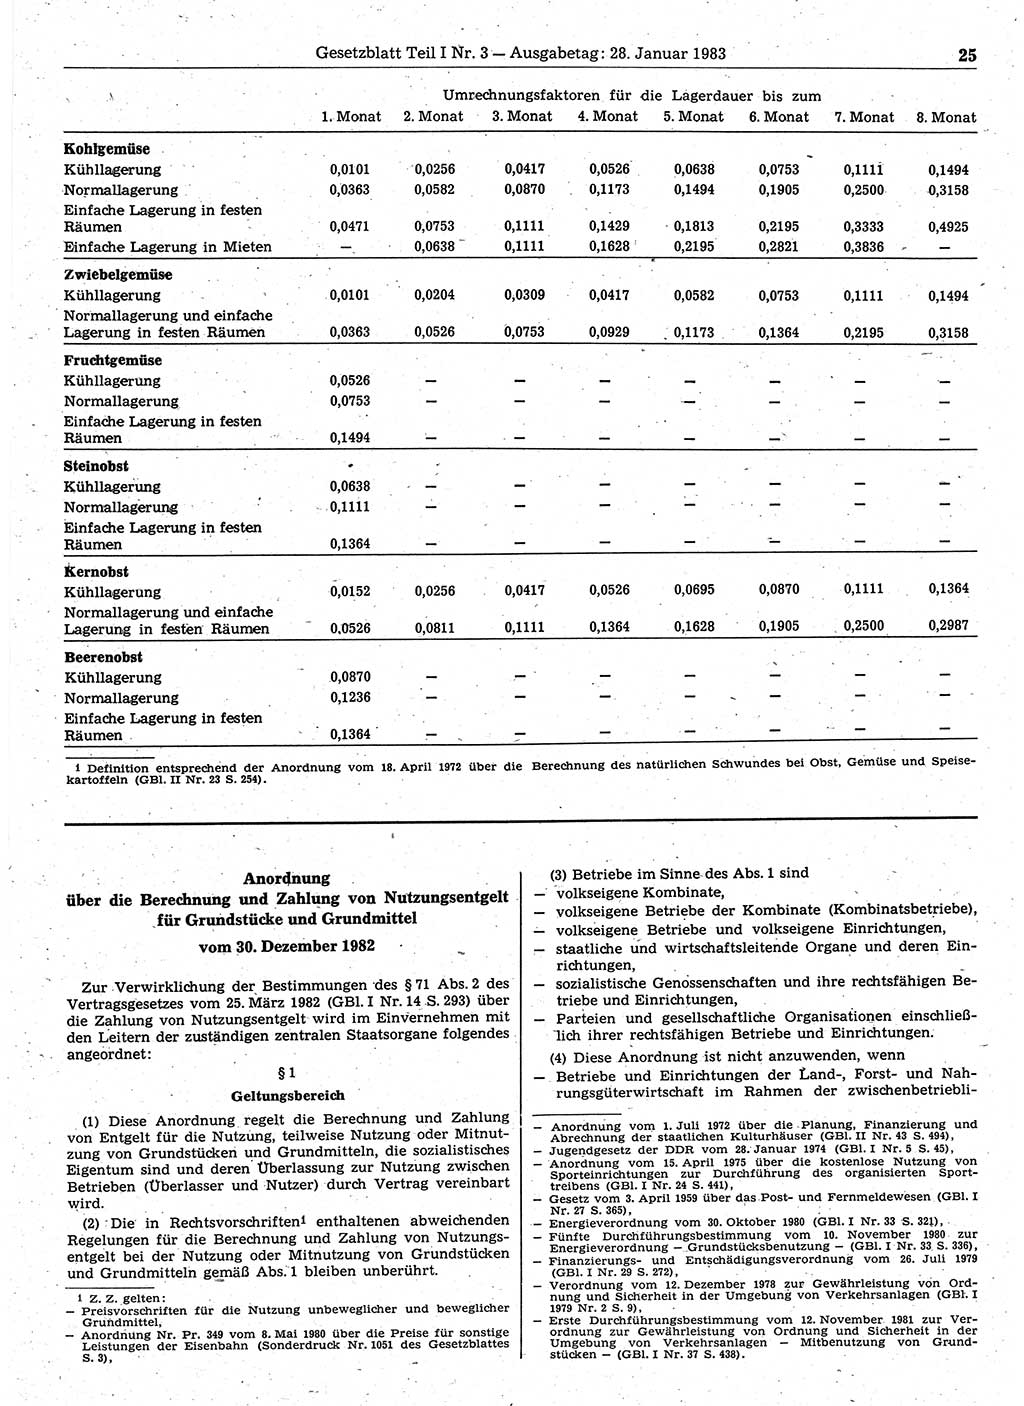 Gesetzblatt (GBl.) der Deutschen Demokratischen Republik (DDR) Teil Ⅰ 1983, Seite 25 (GBl. DDR Ⅰ 1983, S. 25)